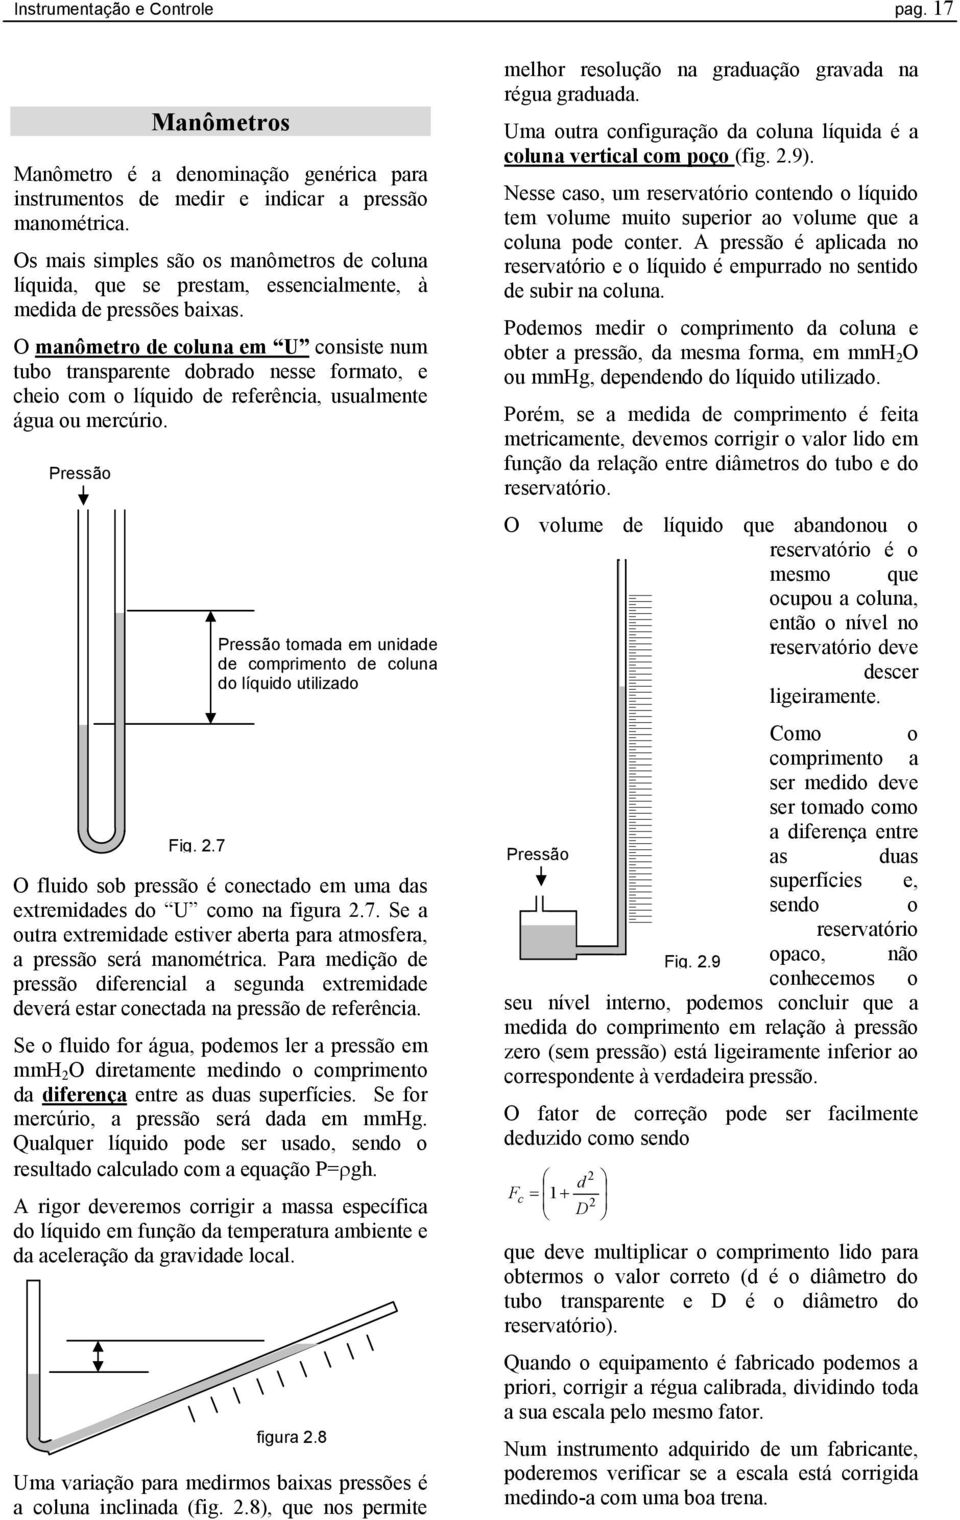 O manômetro de coluna em U consiste num tubo transparente dobrado nesse formato, e cheio com o líquido de referência, usualmente água ou mercúrio. Pressão Fig. 2.